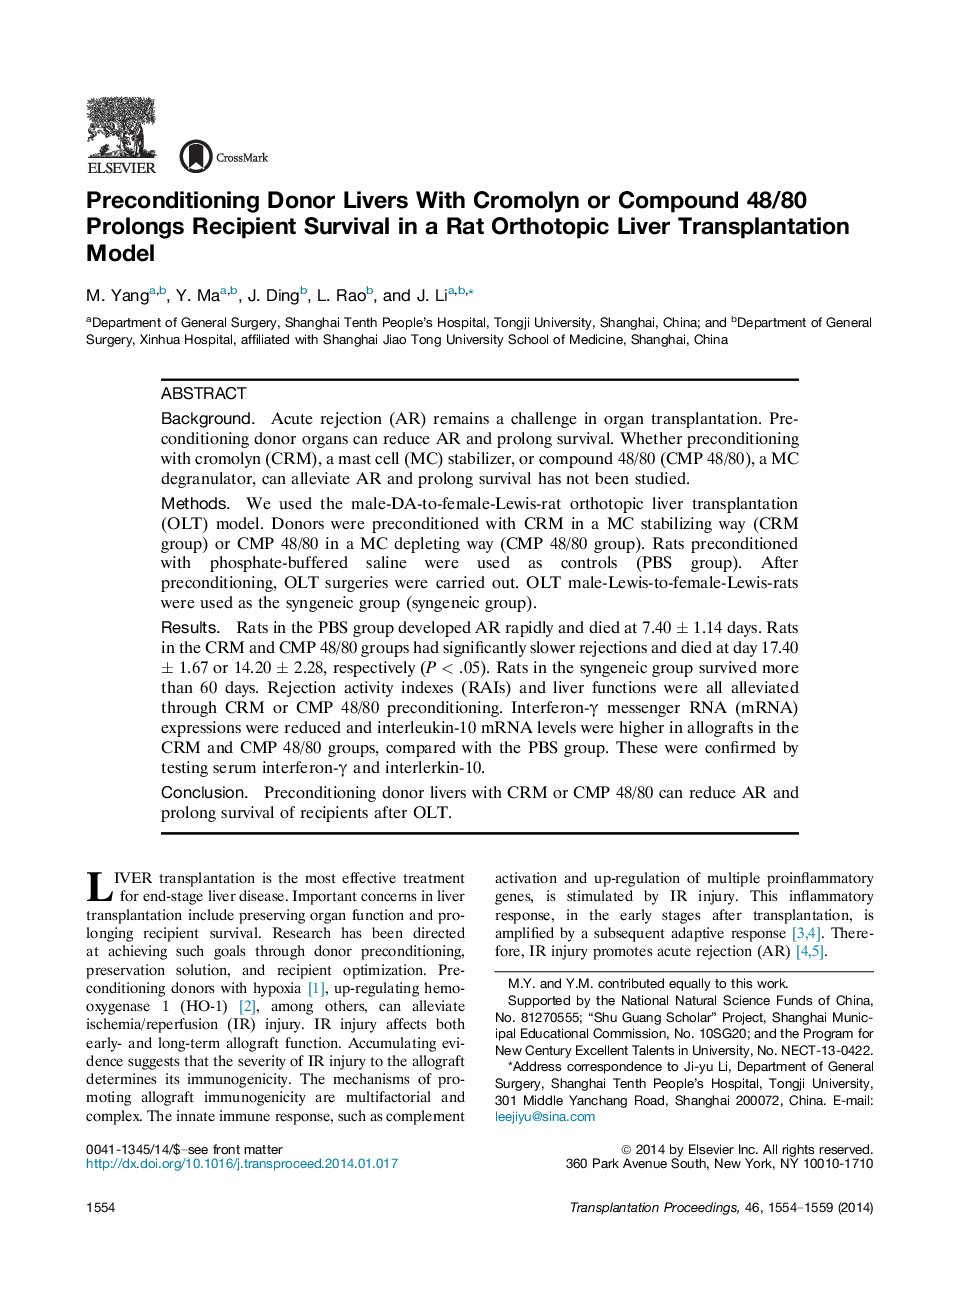 پیشگویی دونرها با کرومولین یا ترکیب 48/80 بقاء گیرنده را در یک مدل پیوند کبدی ارتوپوپیک 